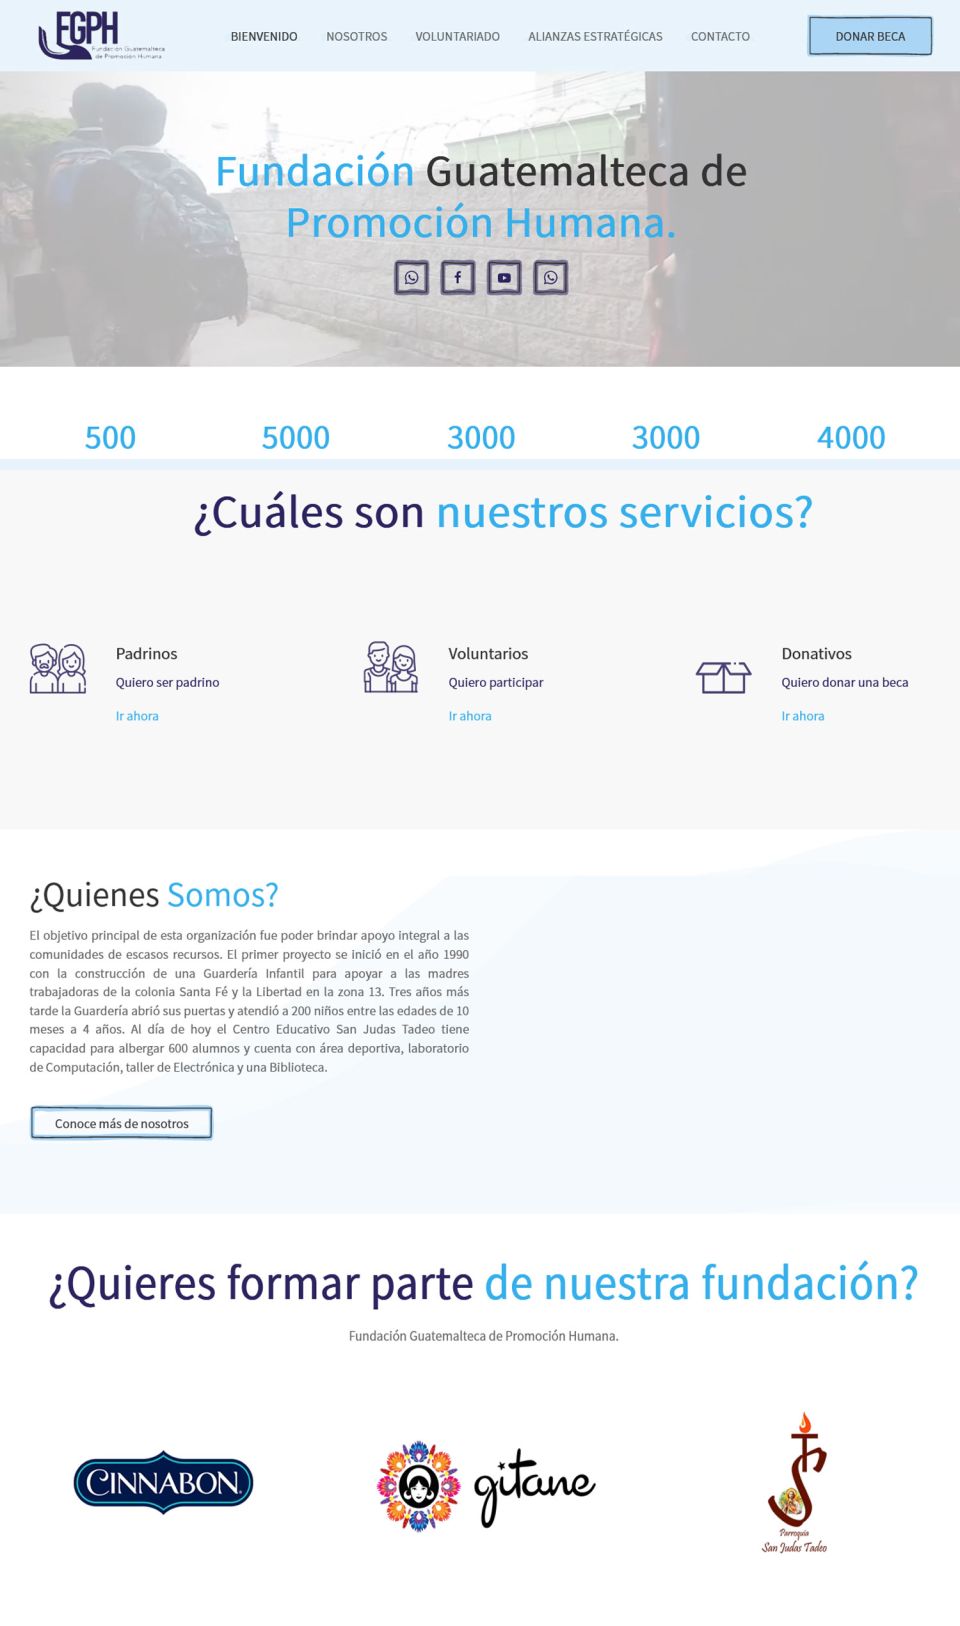 Fundación Guatemalteca de Promoción Humana